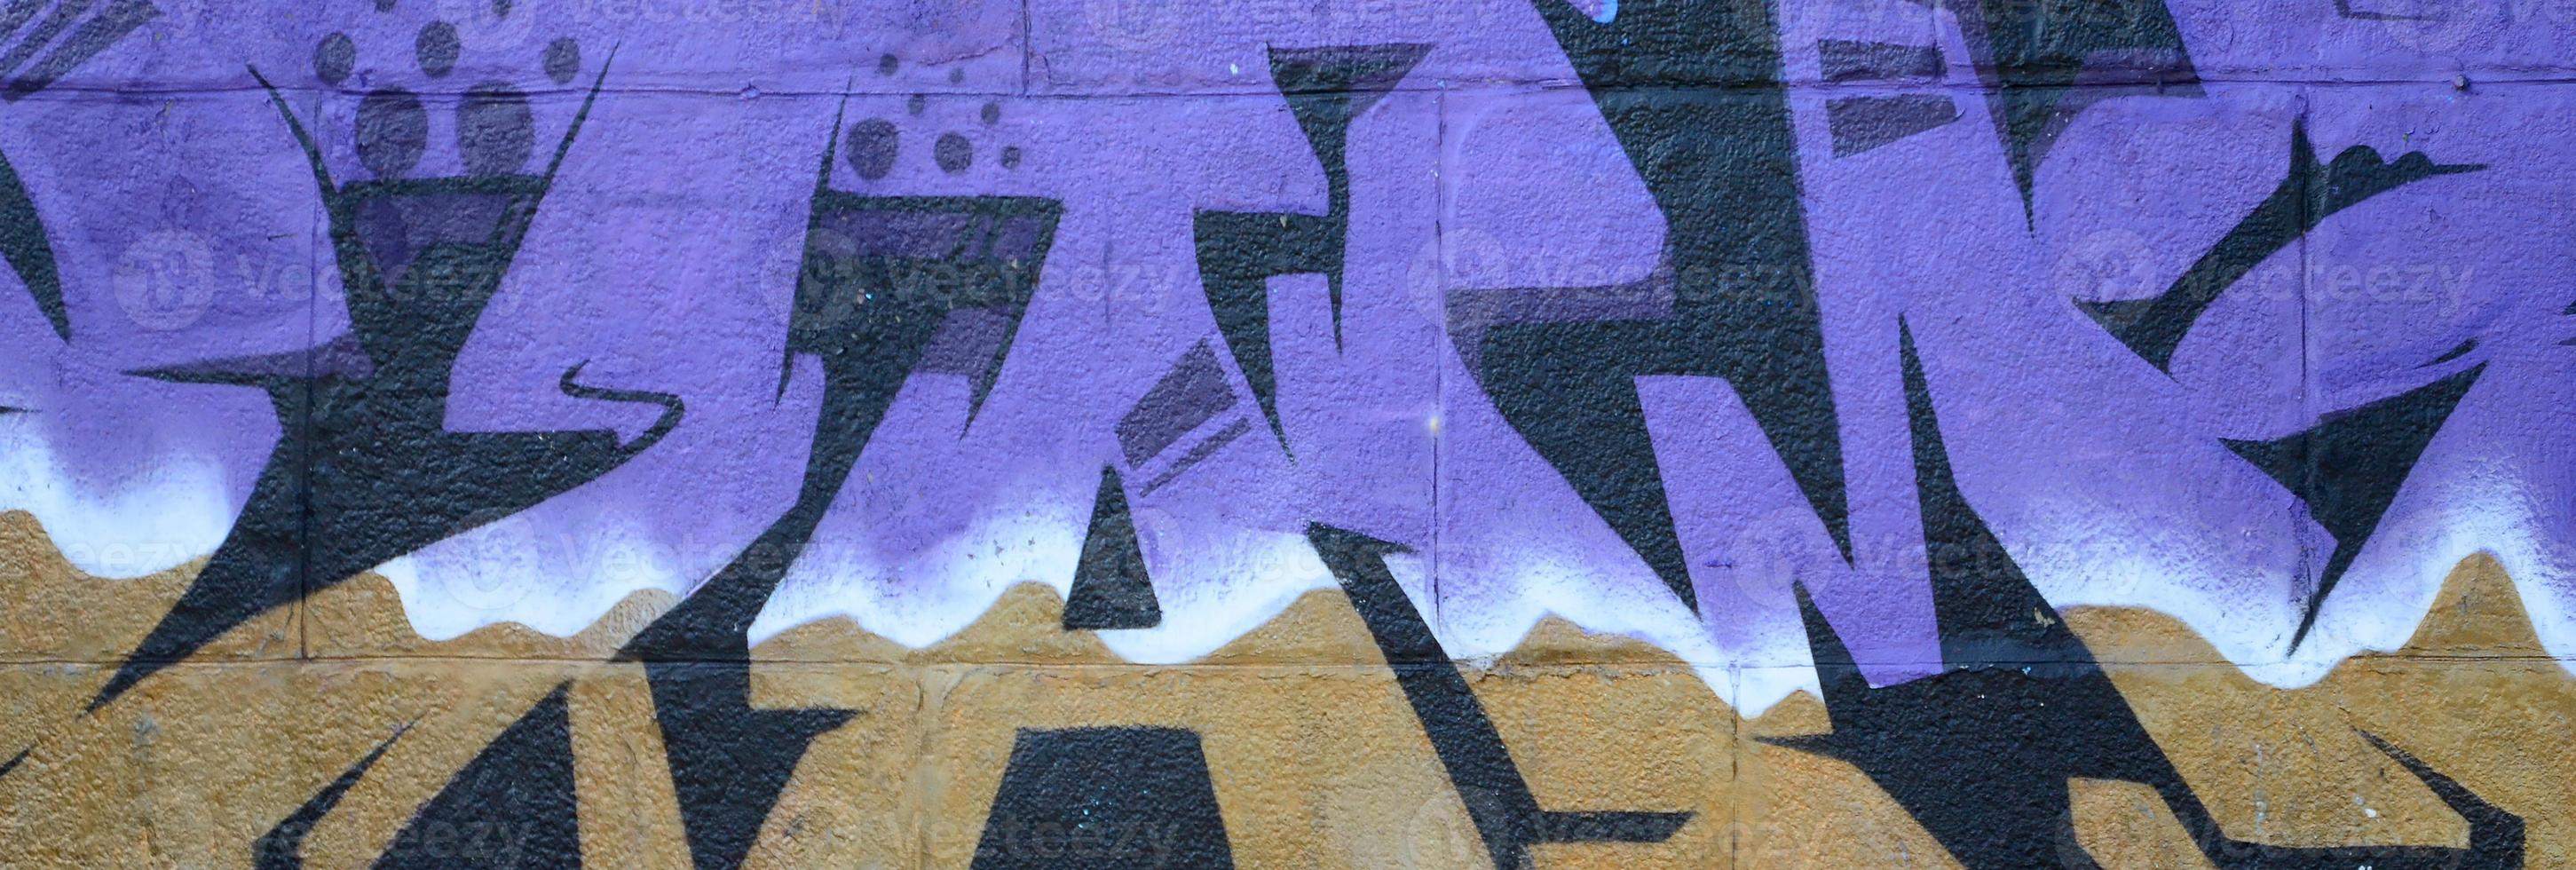 fragmento de dibujos de graffiti. la antigua muralla decorada con manchas de pintura al estilo de la cultura del arte callejero. textura de fondo coloreada en tonos morados foto